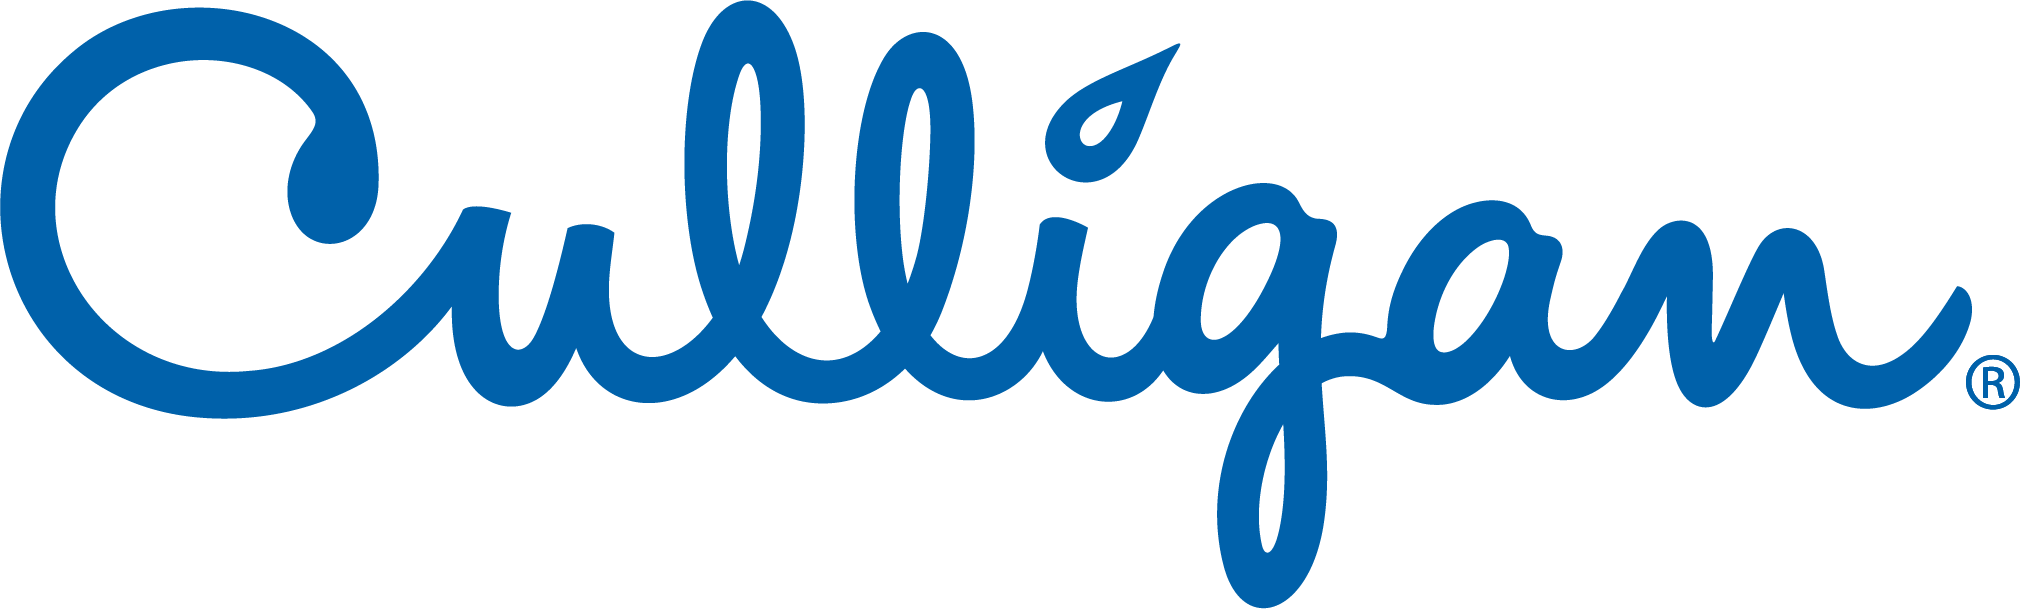 Culligan_Logo_Blue